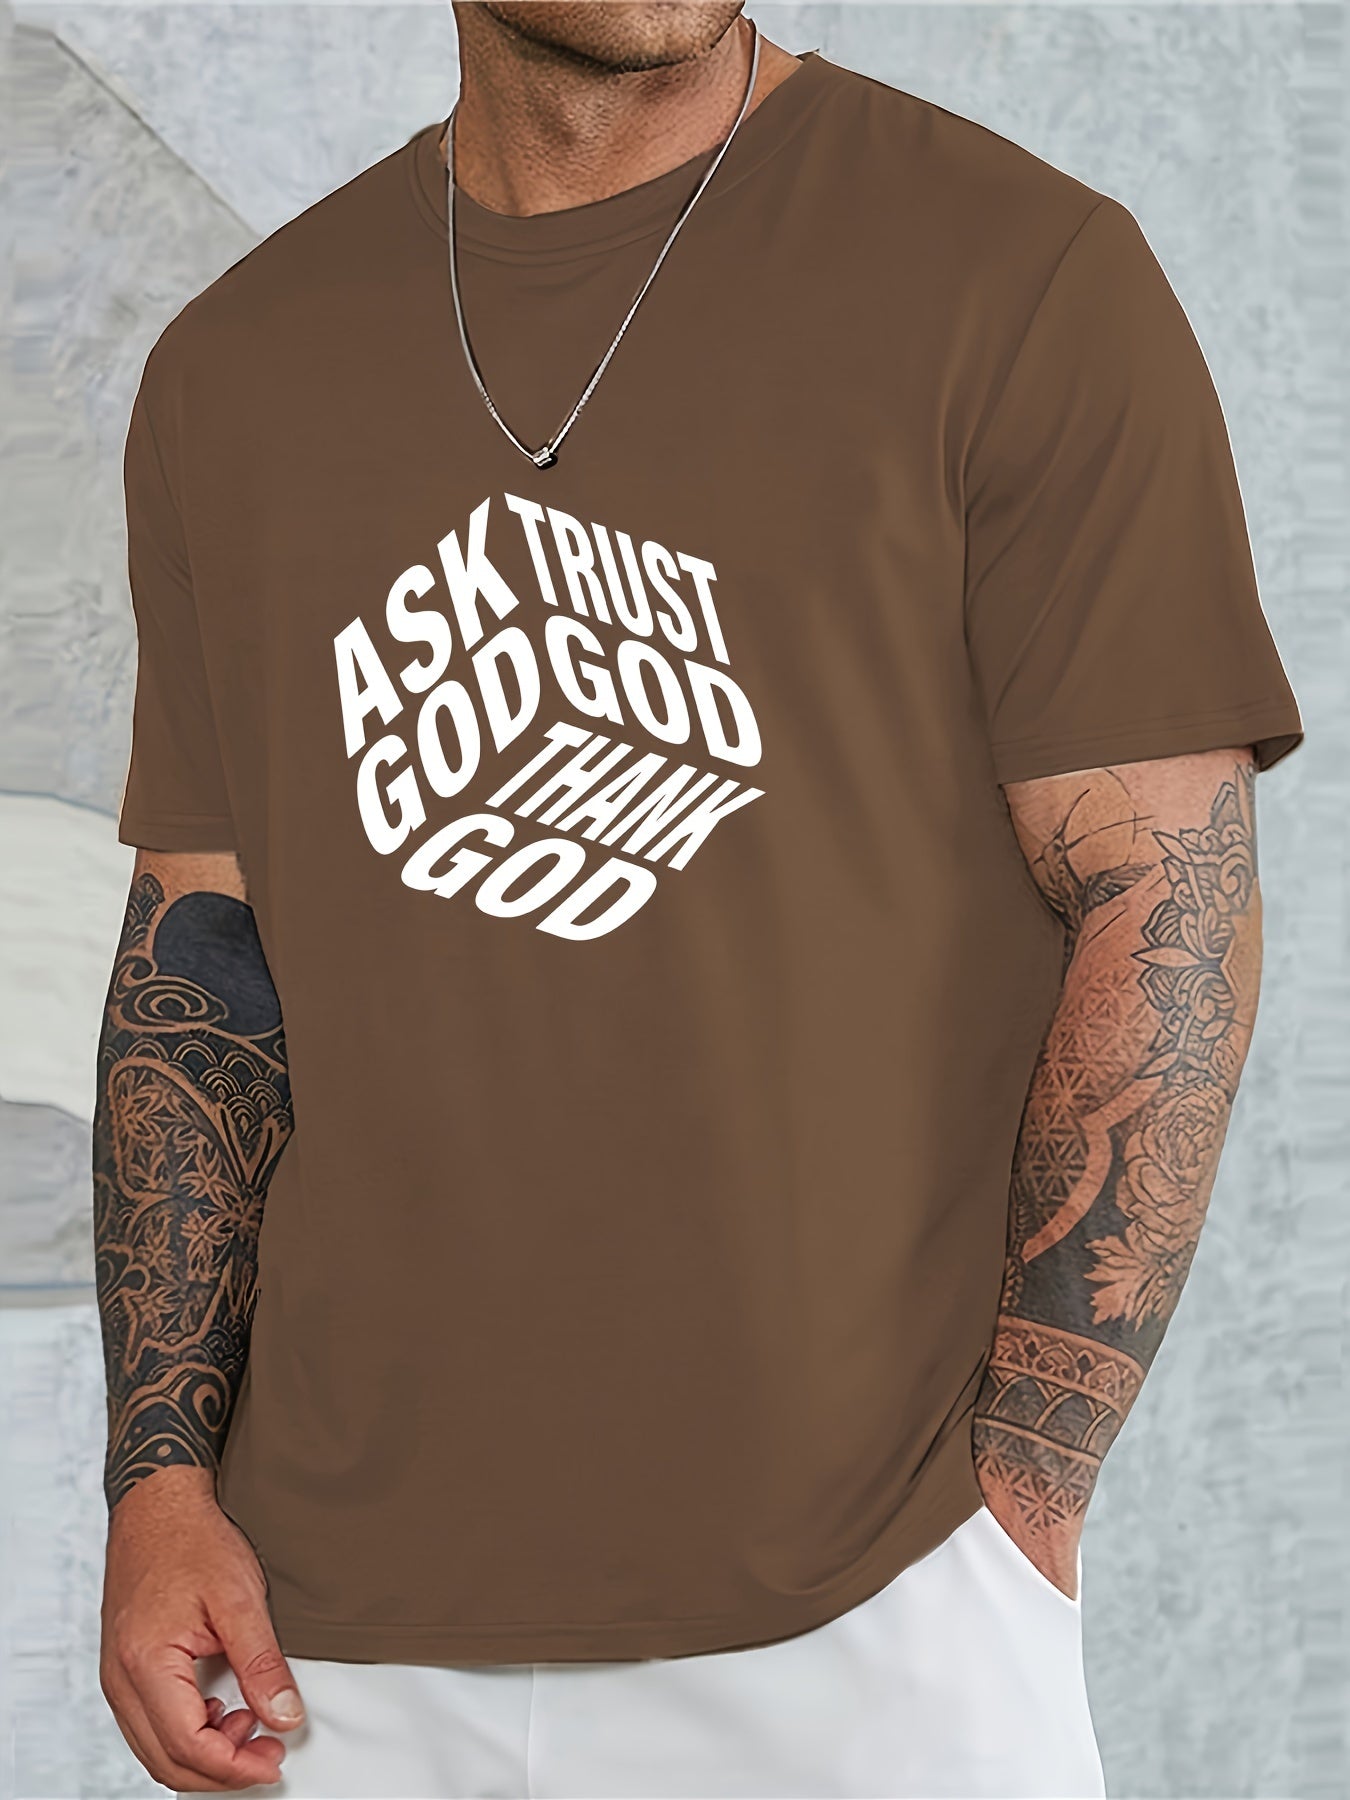 Ask Trust Thank God Men's Christian T-shirt claimedbygoddesigns